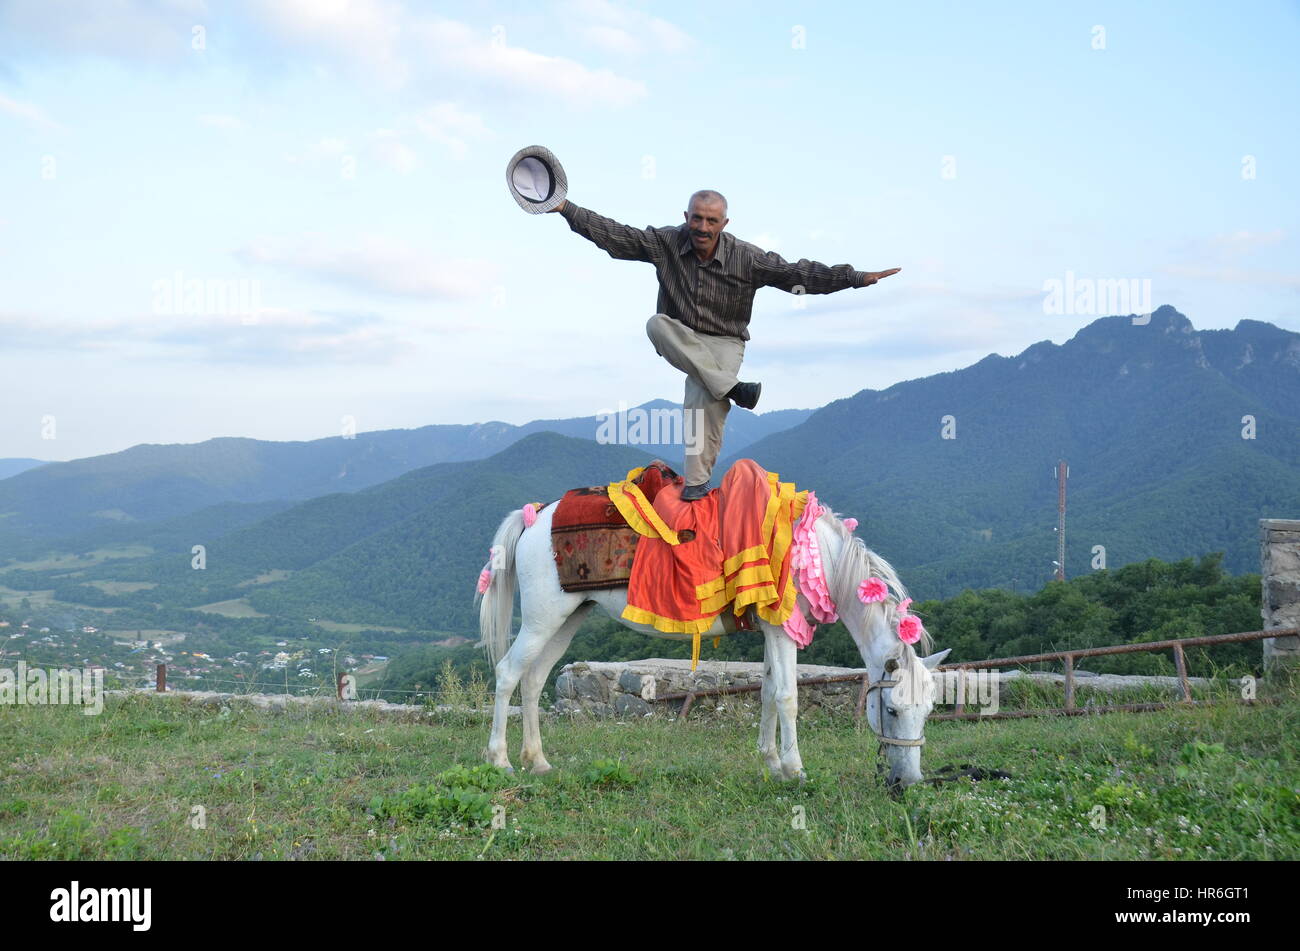 Dancing on a horseback at Nagorno-Karabakh Stock Photo